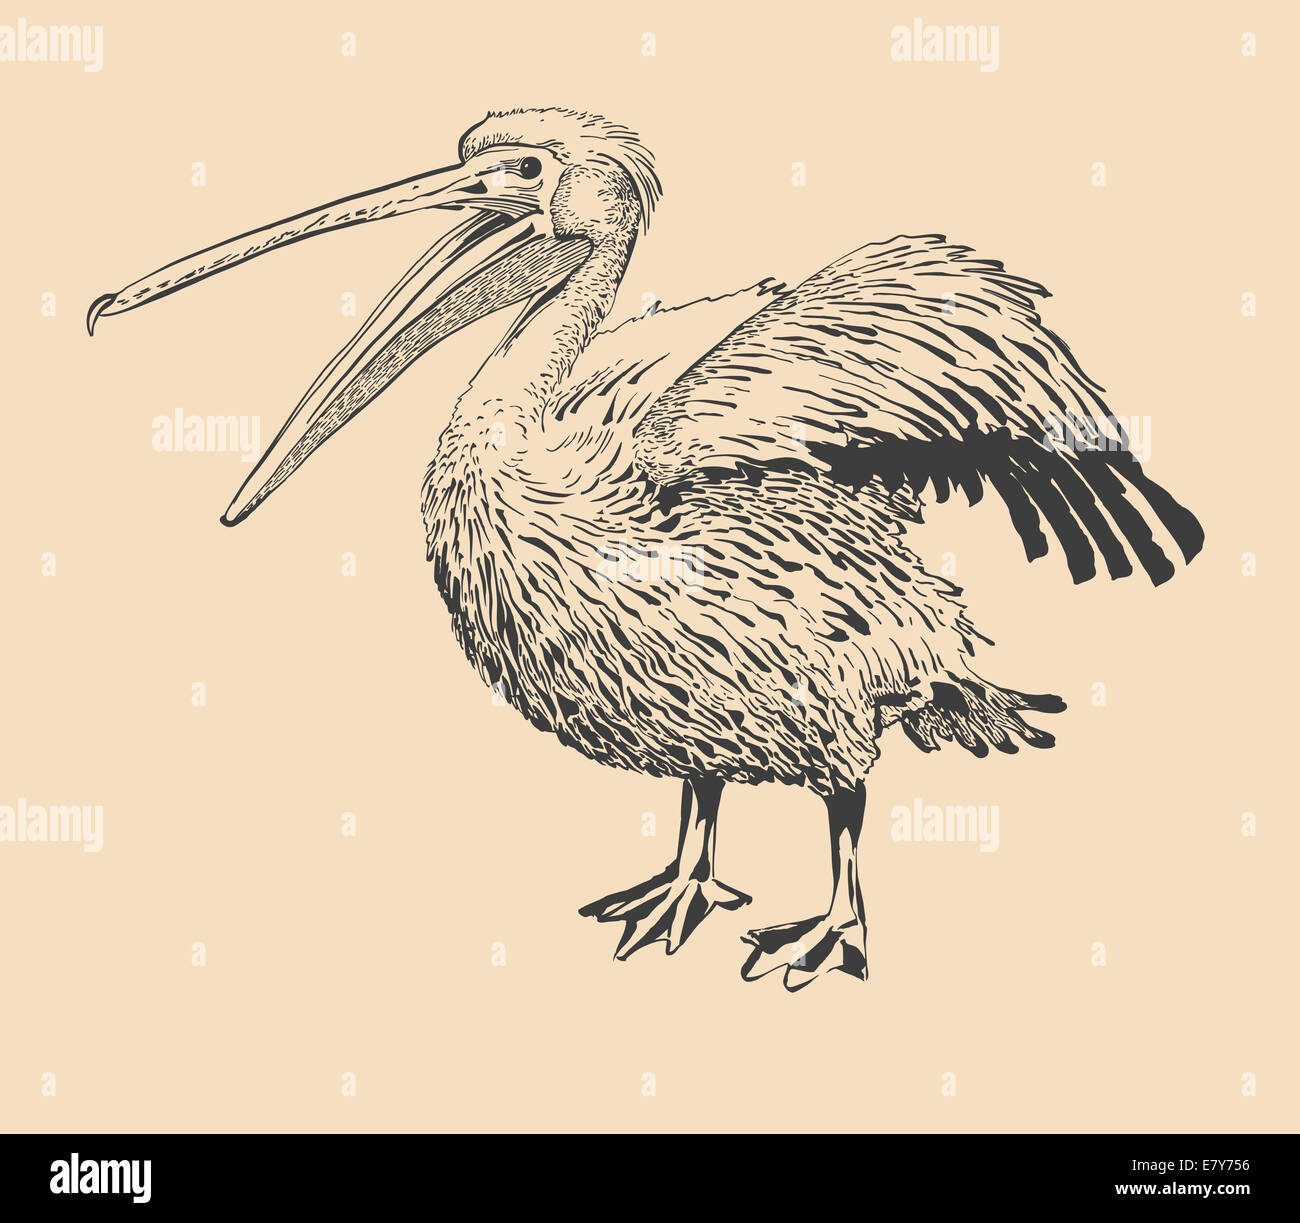 original ink drawing of pelican with open beak Stock Photo